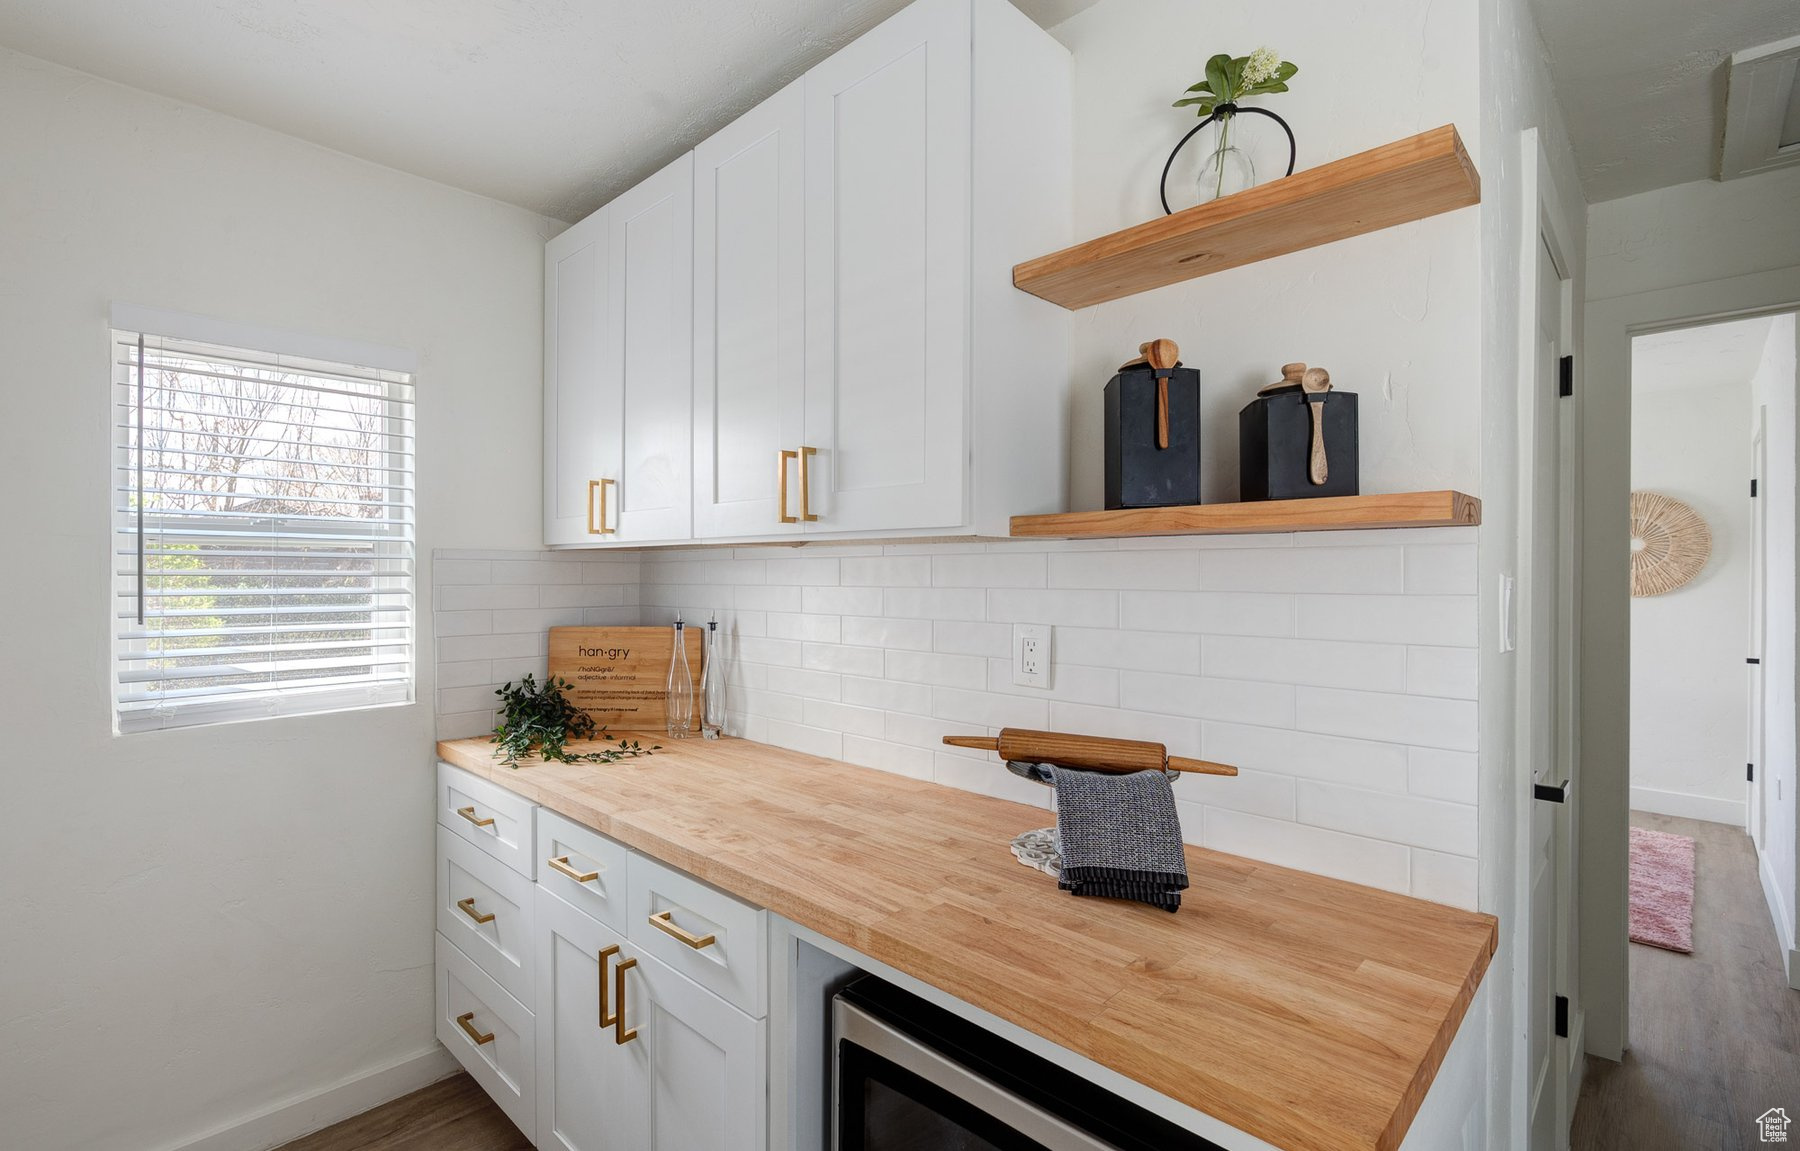 Nook pantry area with floating wood shelving, white backsplash and brushed gold finishes